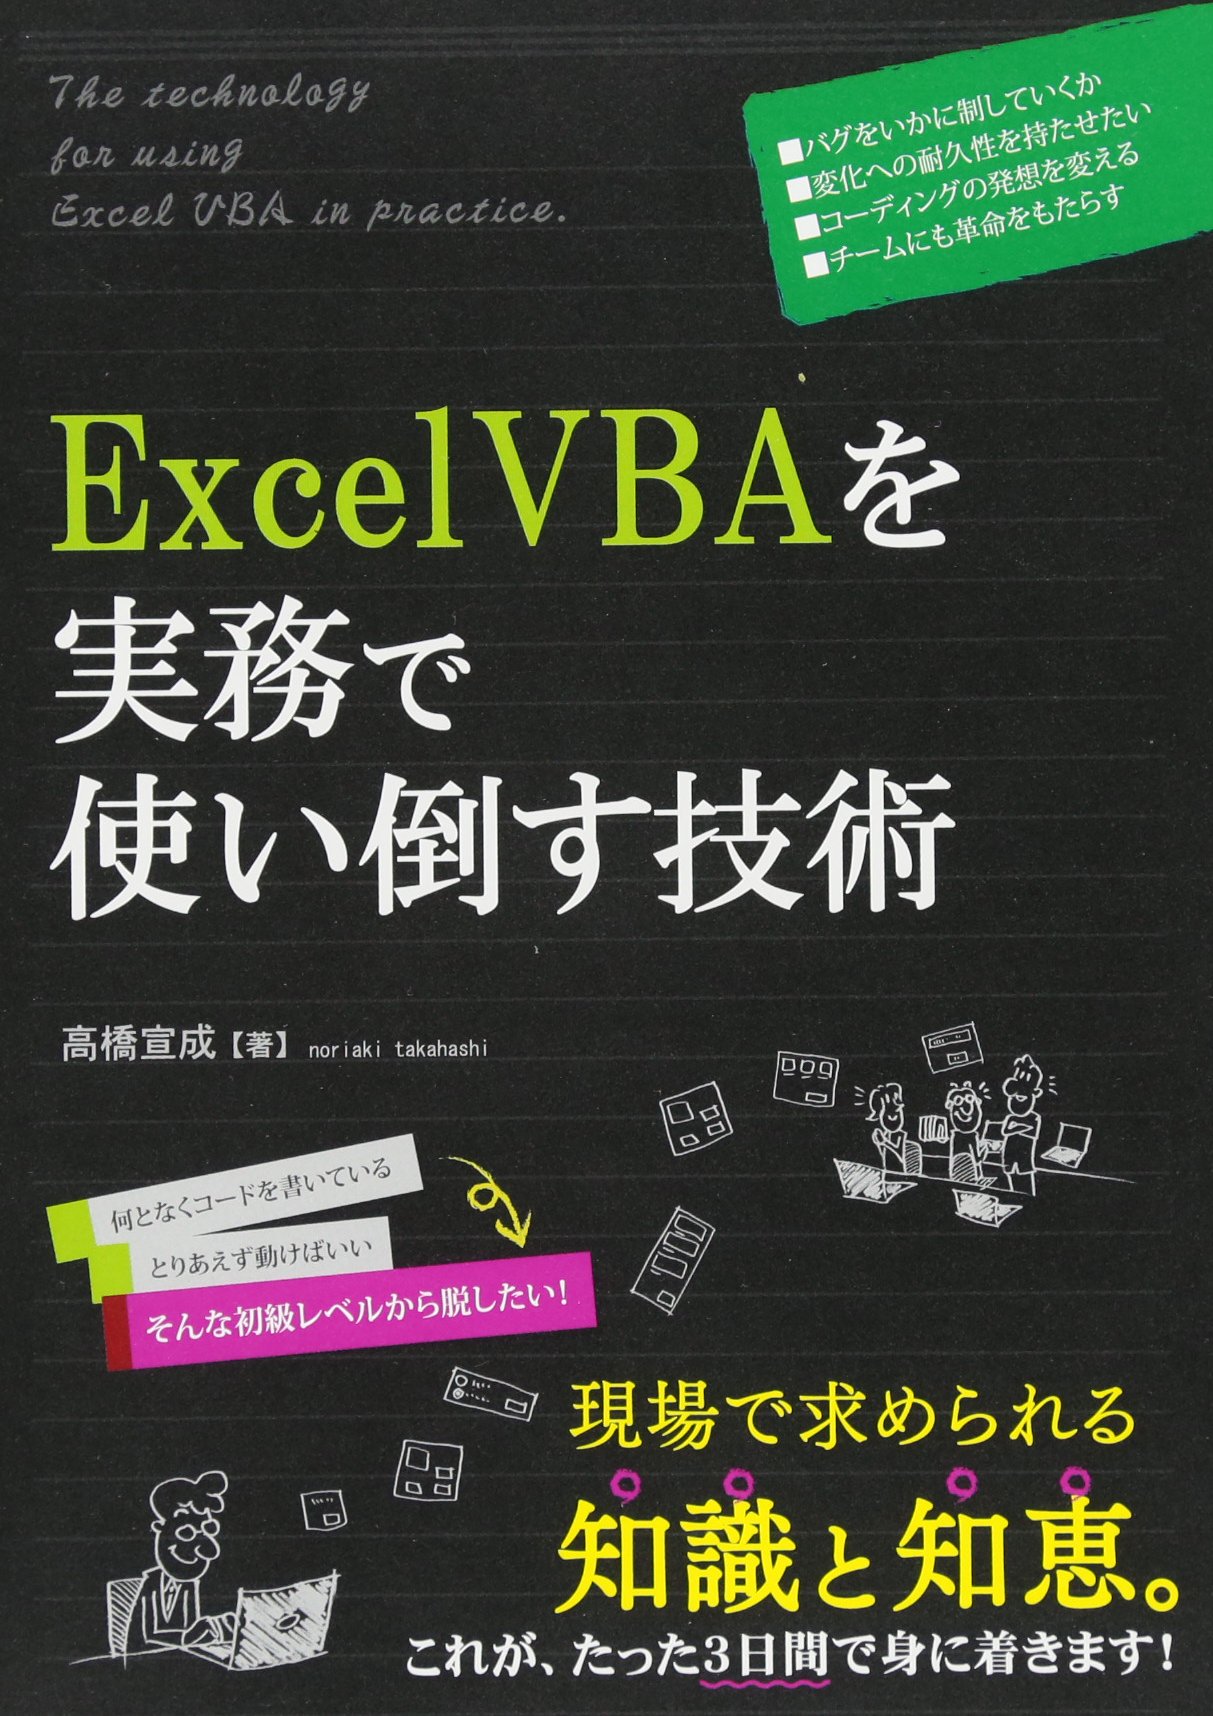 ExcelVBAを実務で使い倒す技術の商品画像